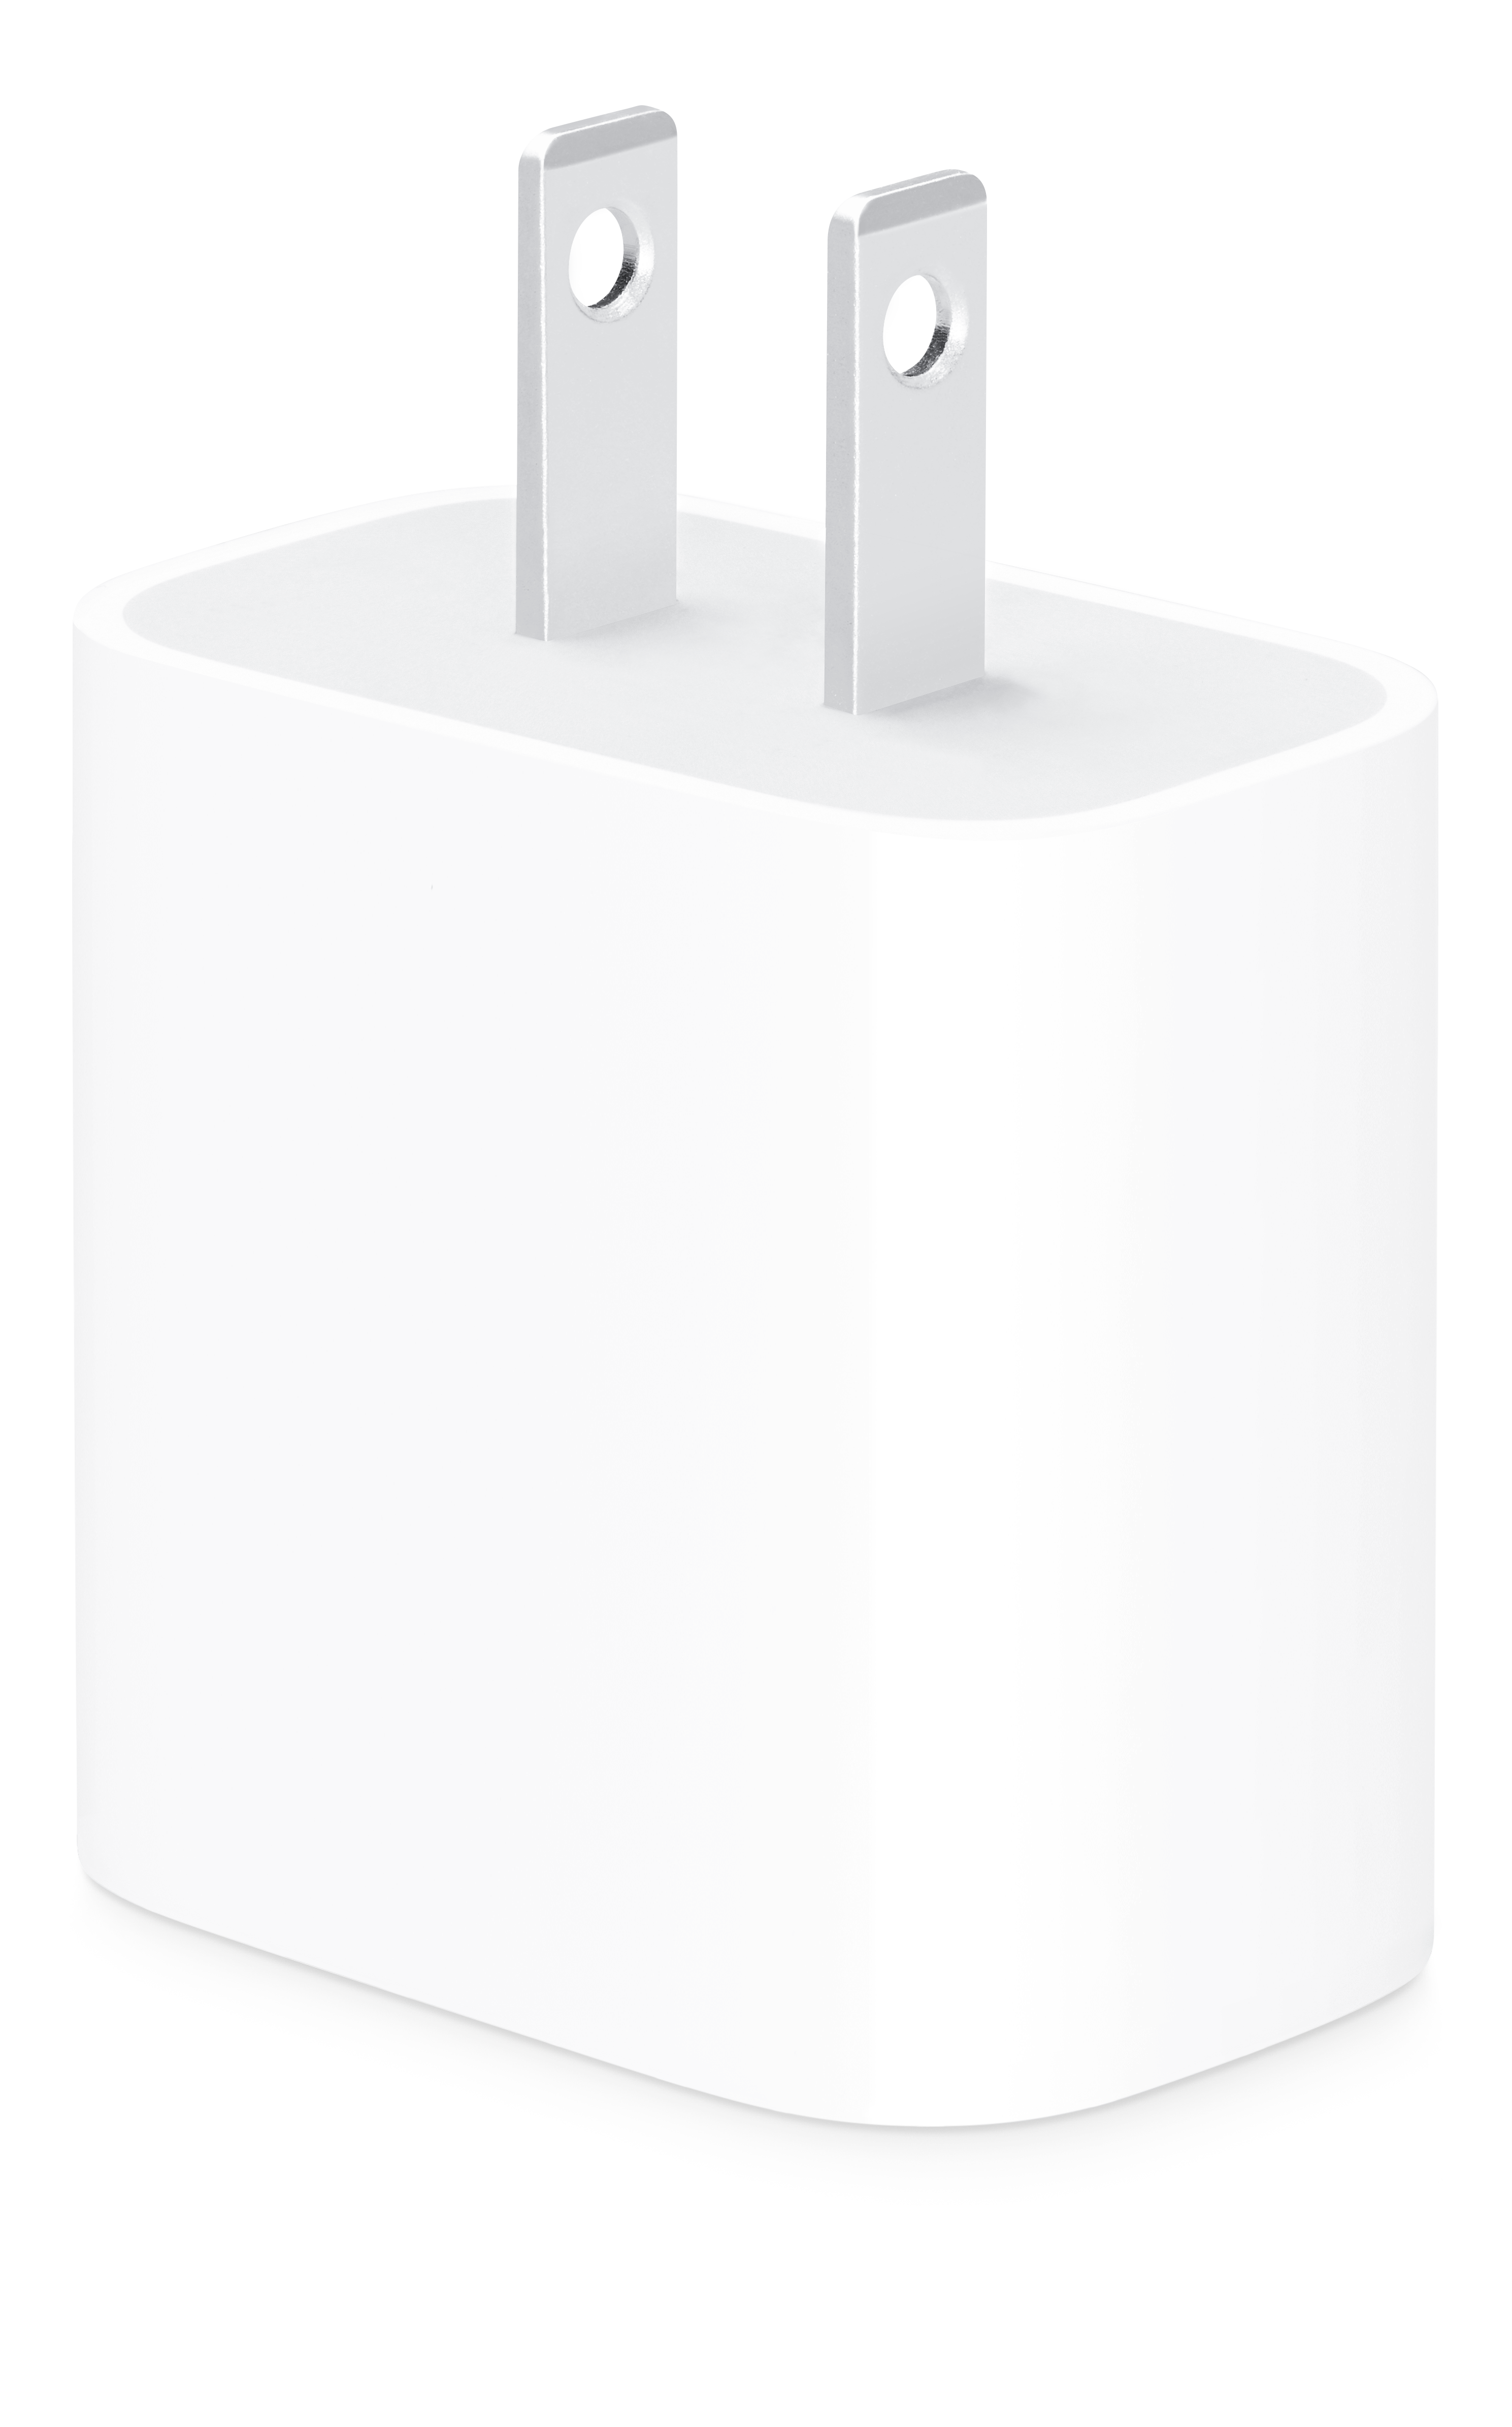 Adaptador de corriente USB-C de 20 W  Mac Center Perú – Mac Center Peru